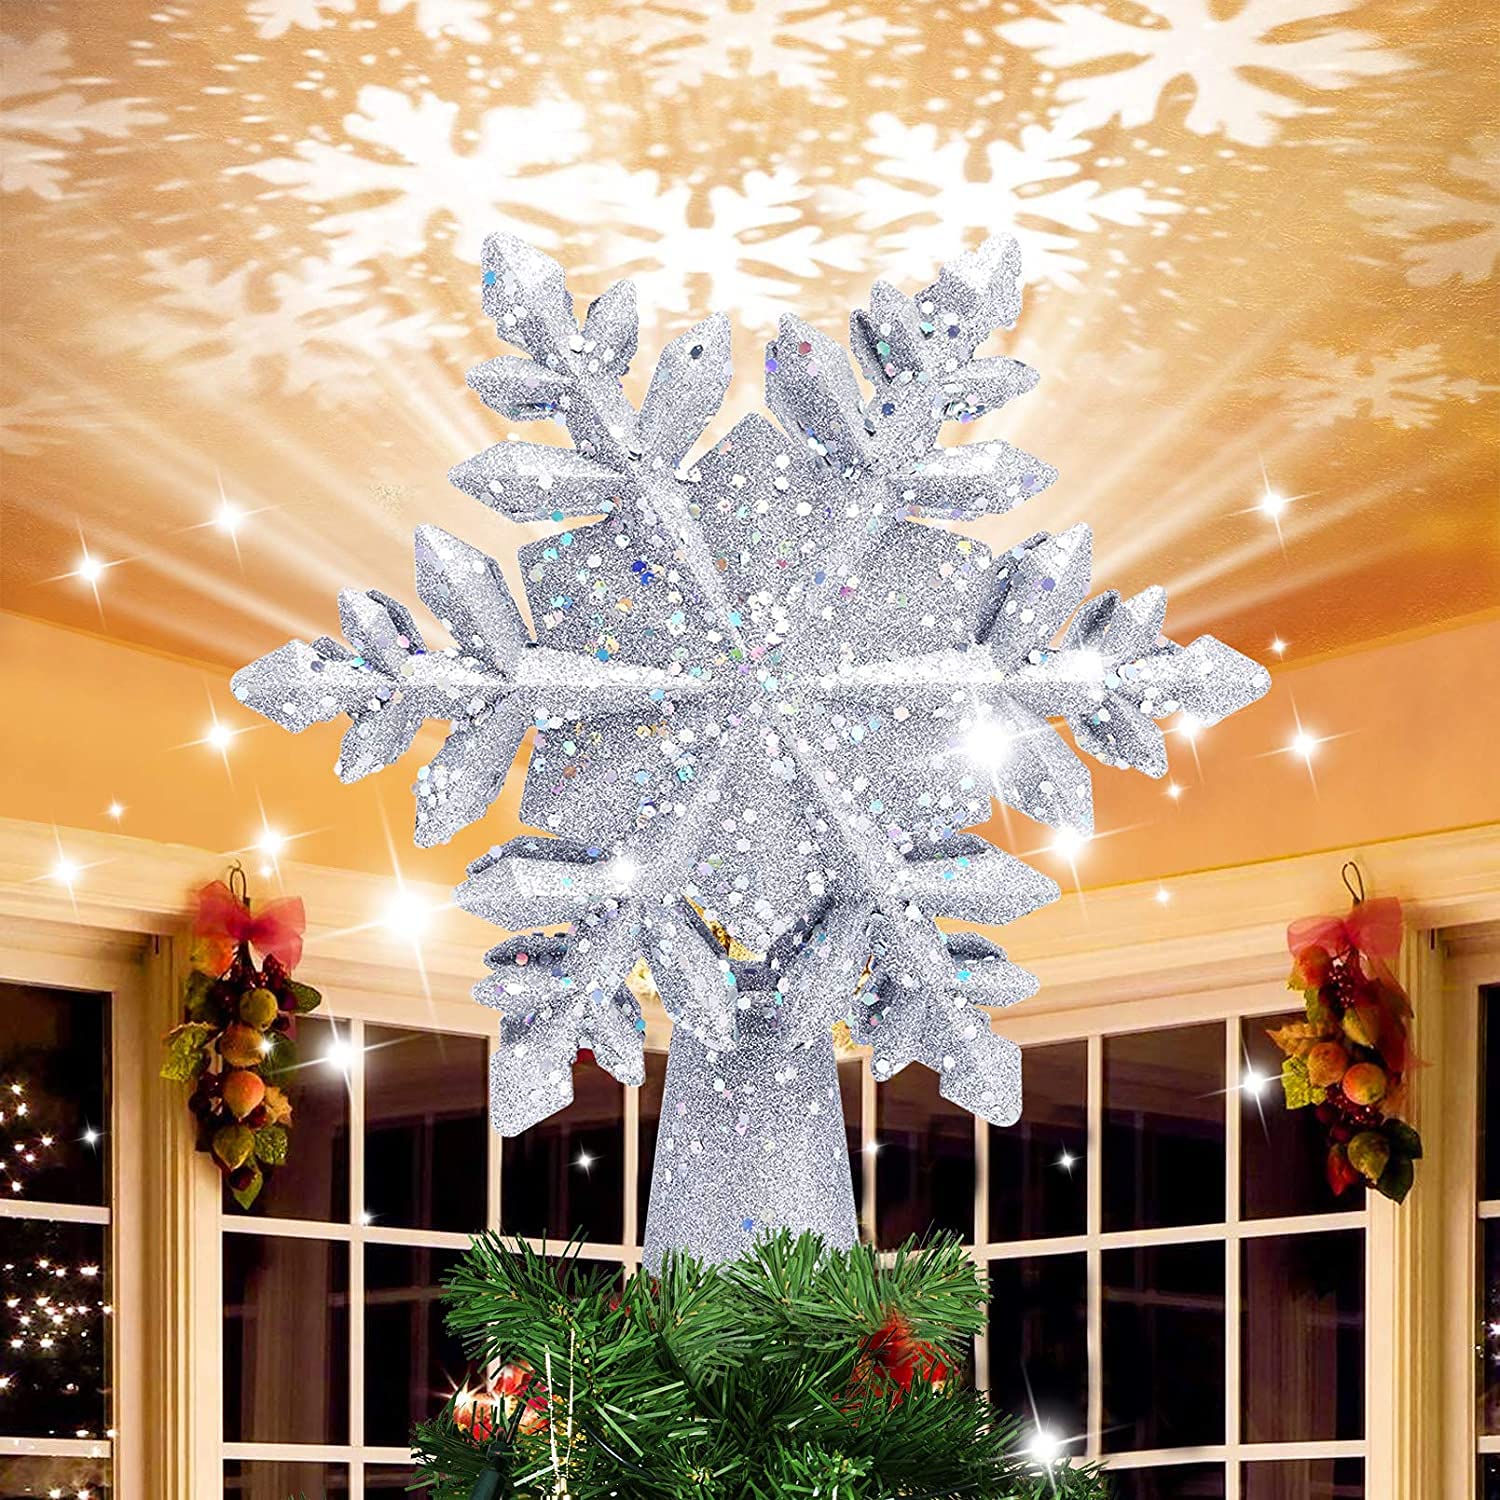 Weihnachtsdeko Weihnachtsbaumspitze Schneeflocke,Christbaumspitze Led Schneeflocke Projektor mit 3D Rotation,Baumschmuck Weihnachten für Weihnachten,Hause,Innendekoration, (Silbrig)